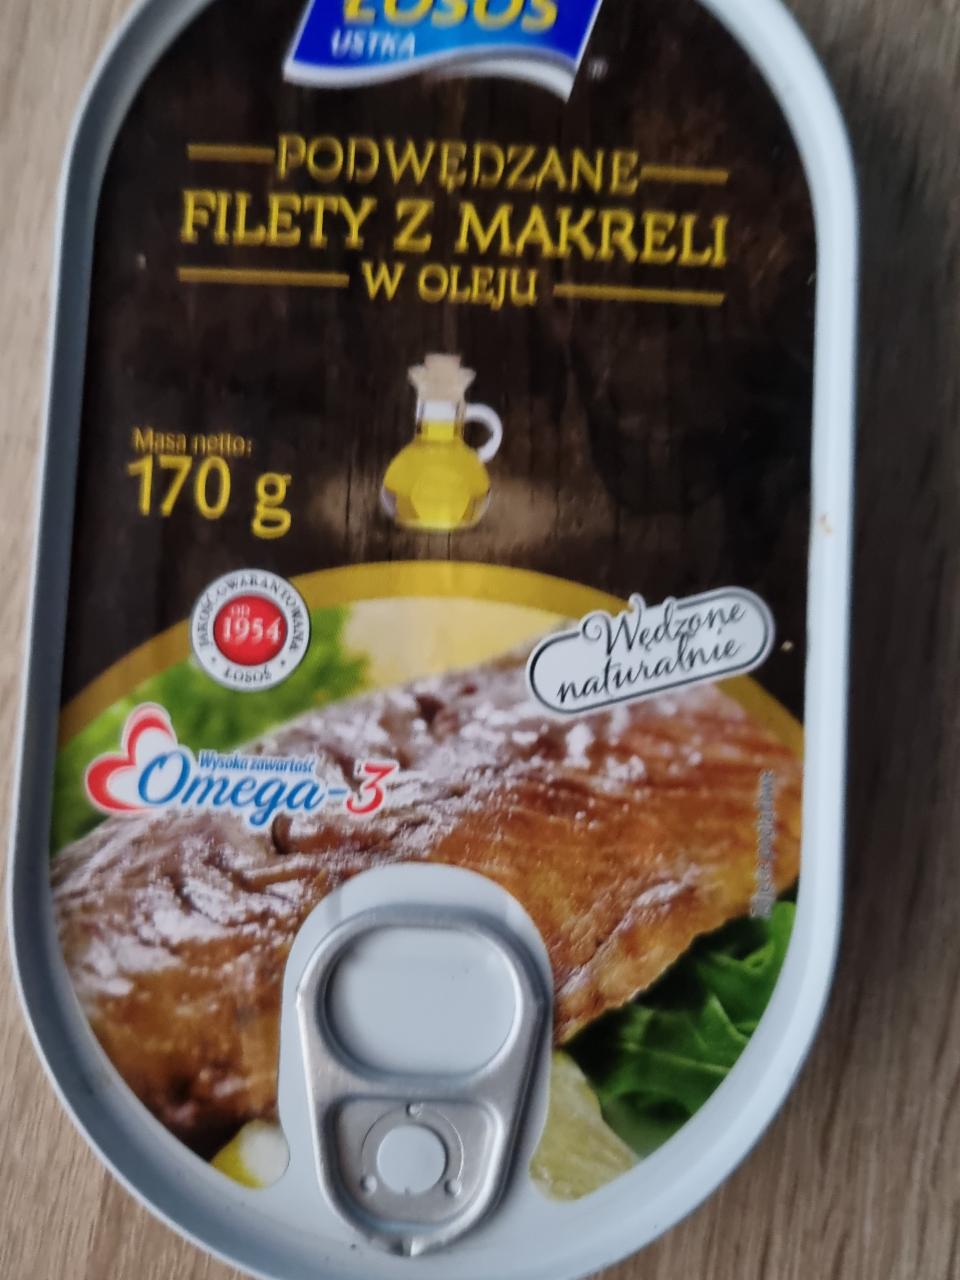 Zdjęcia - Podwędzane filety z makreli Łosoś